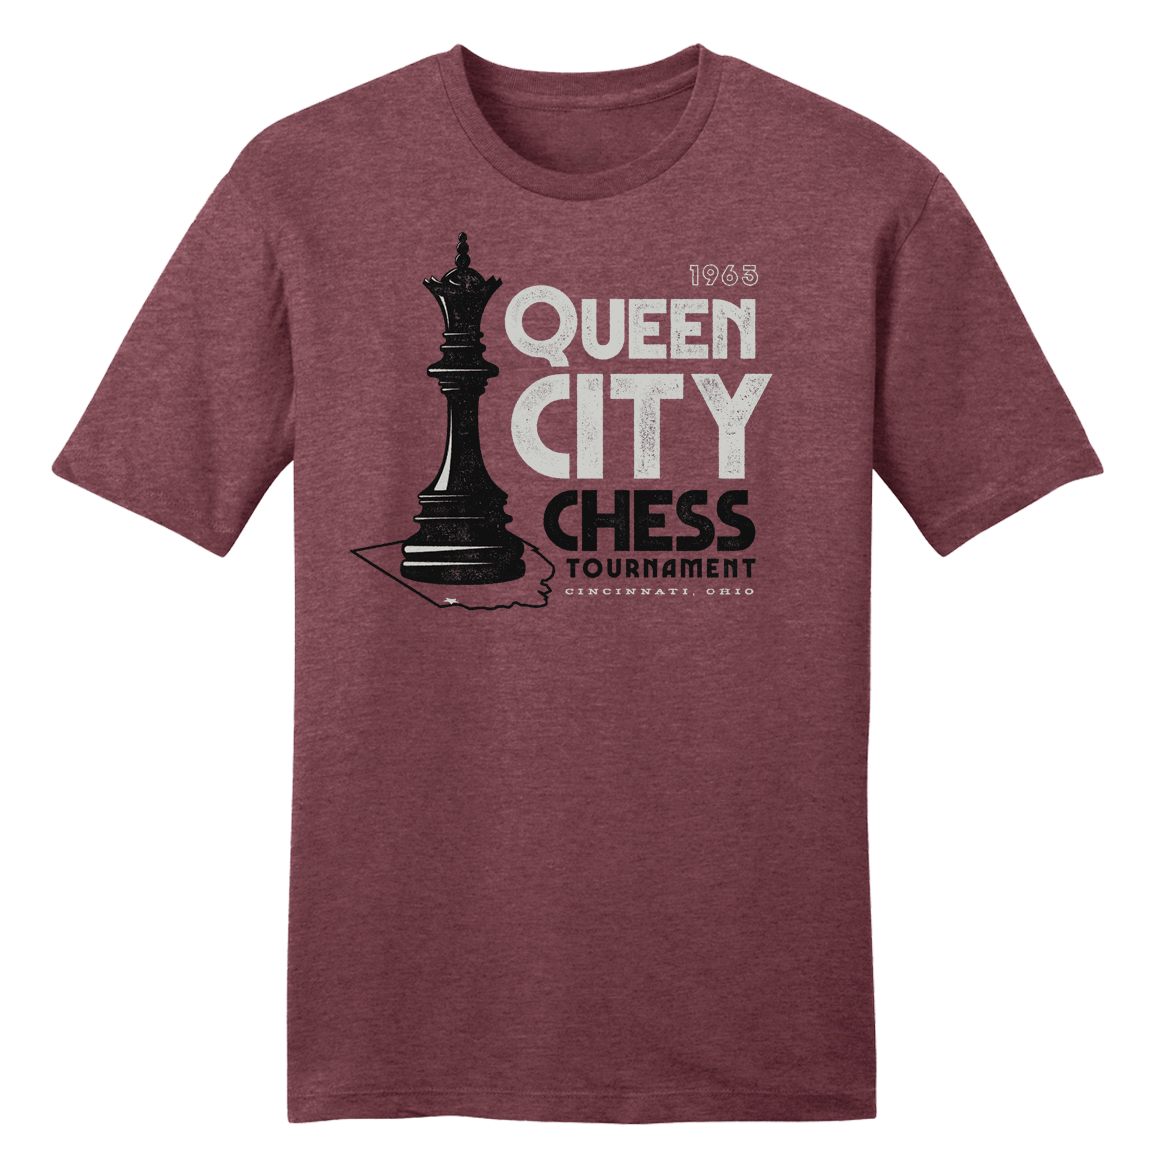 Queen City Chess Tournament 1963